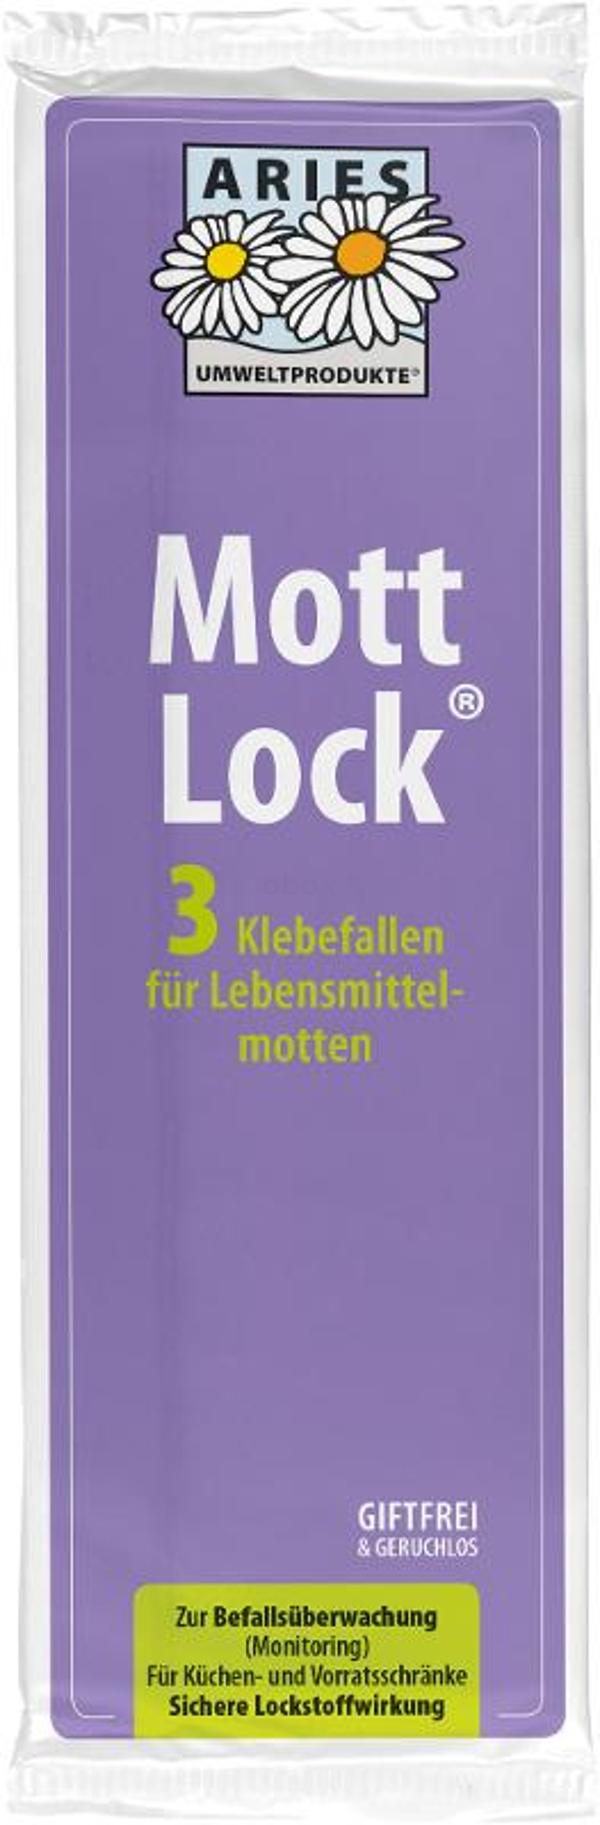 Produktfoto zu Mottlock 3er Pack - für Vorratsschädlinge